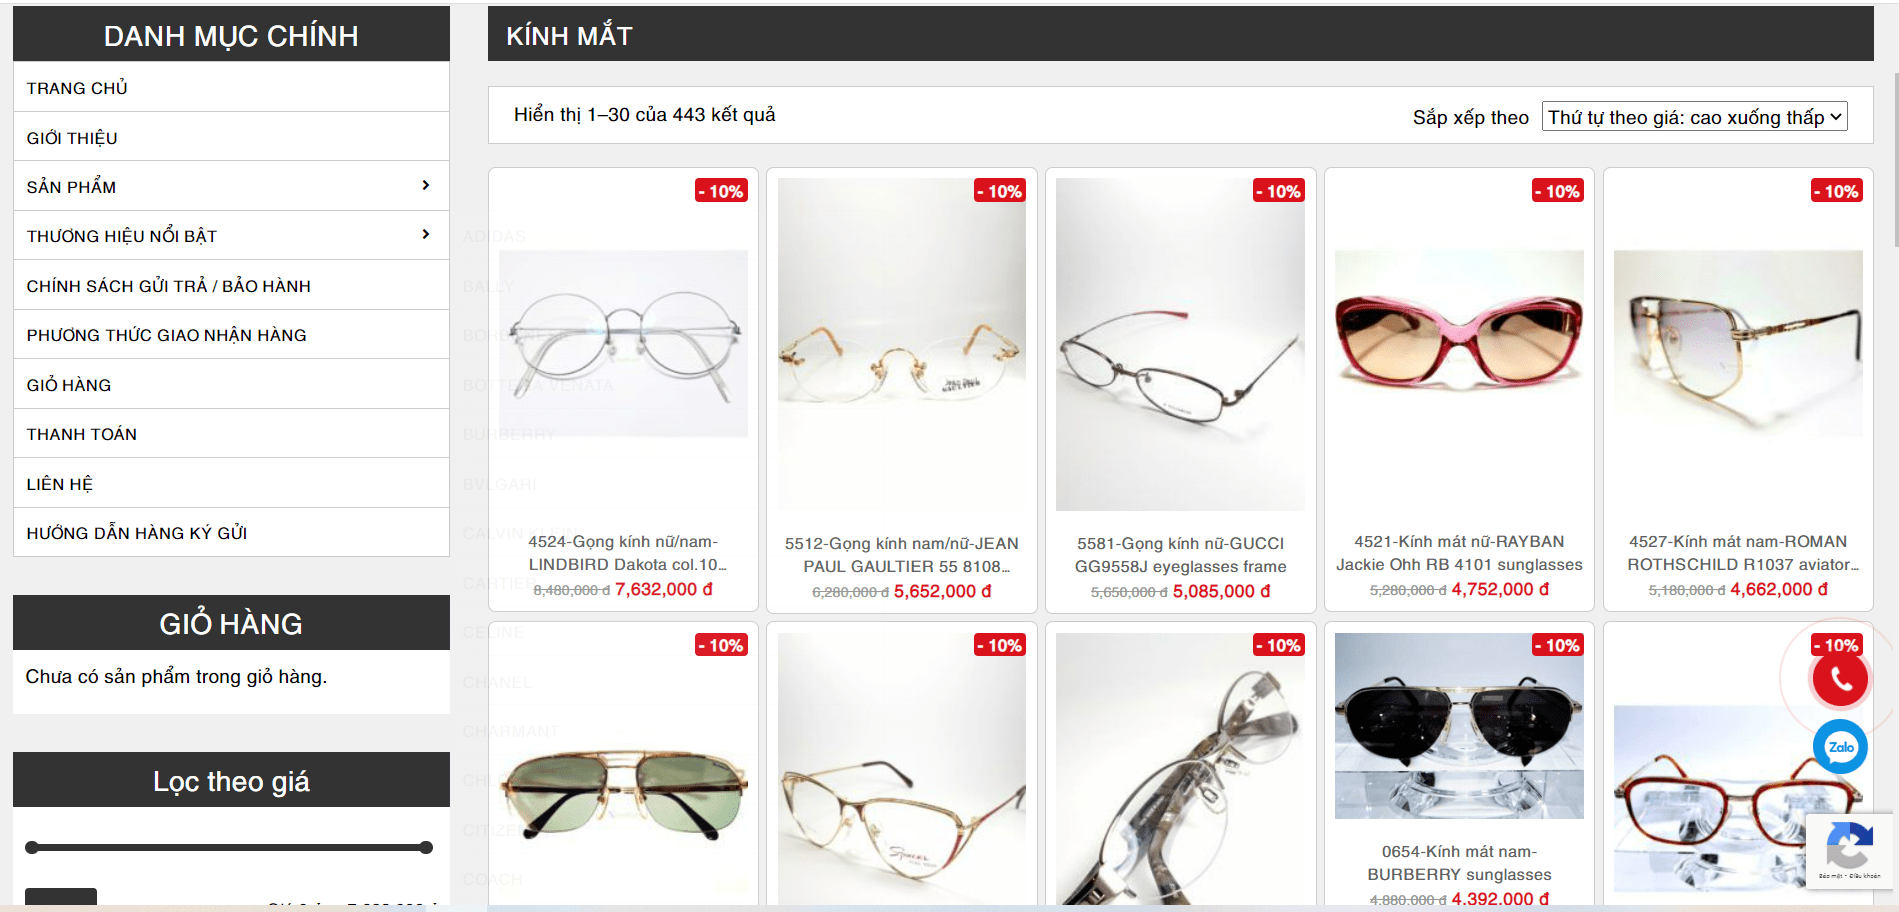 Kiwiki - Địa chỉ mua mắt kính burberry auth thanh lý chính hãng giá tốt uy tín